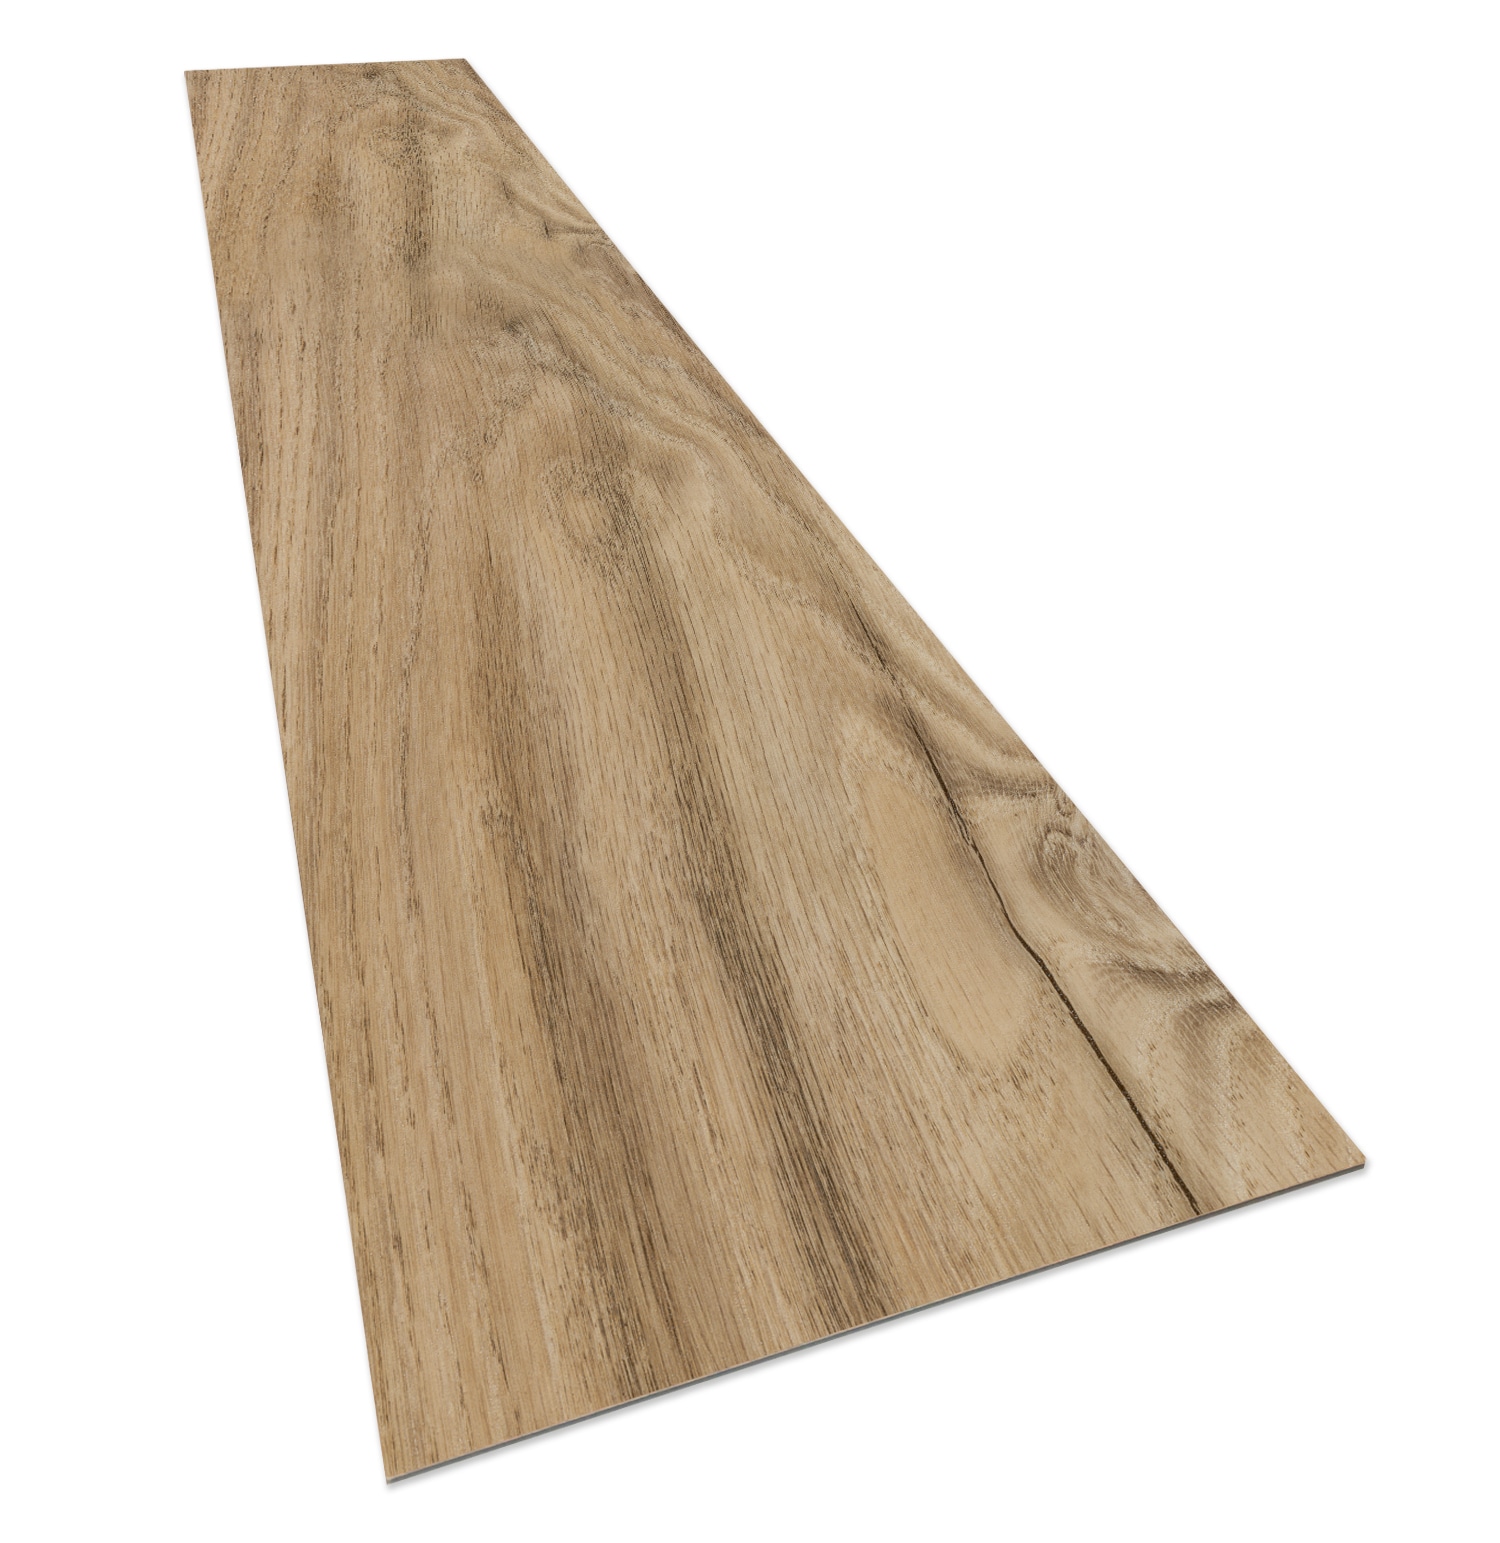 26′ ′ Professional Laminate Engineered Wood Vinyl Plank Lvt